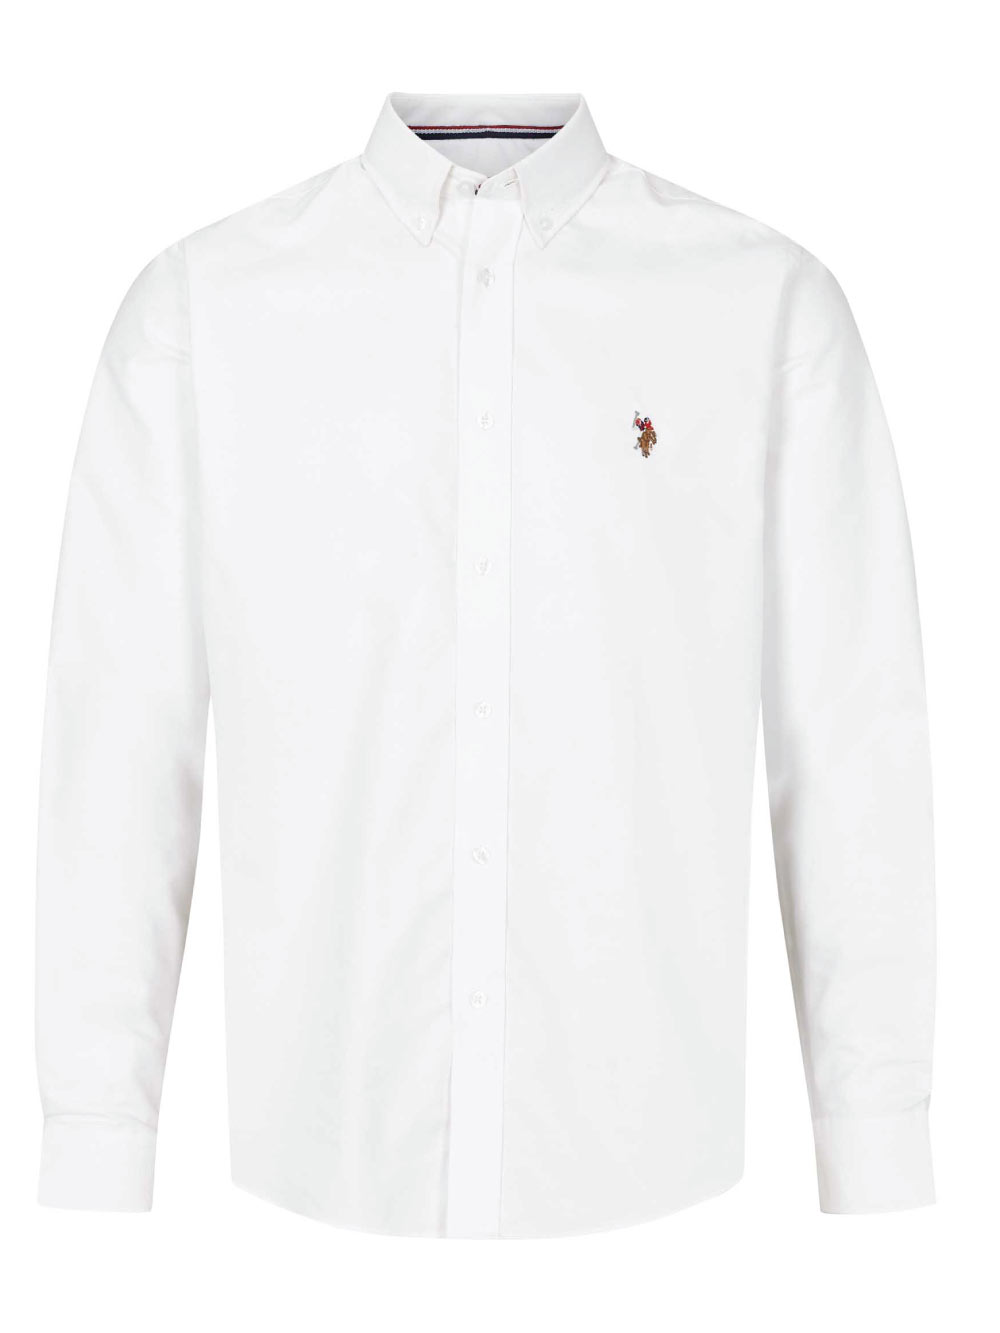 Armin Oxfordskjorte - White